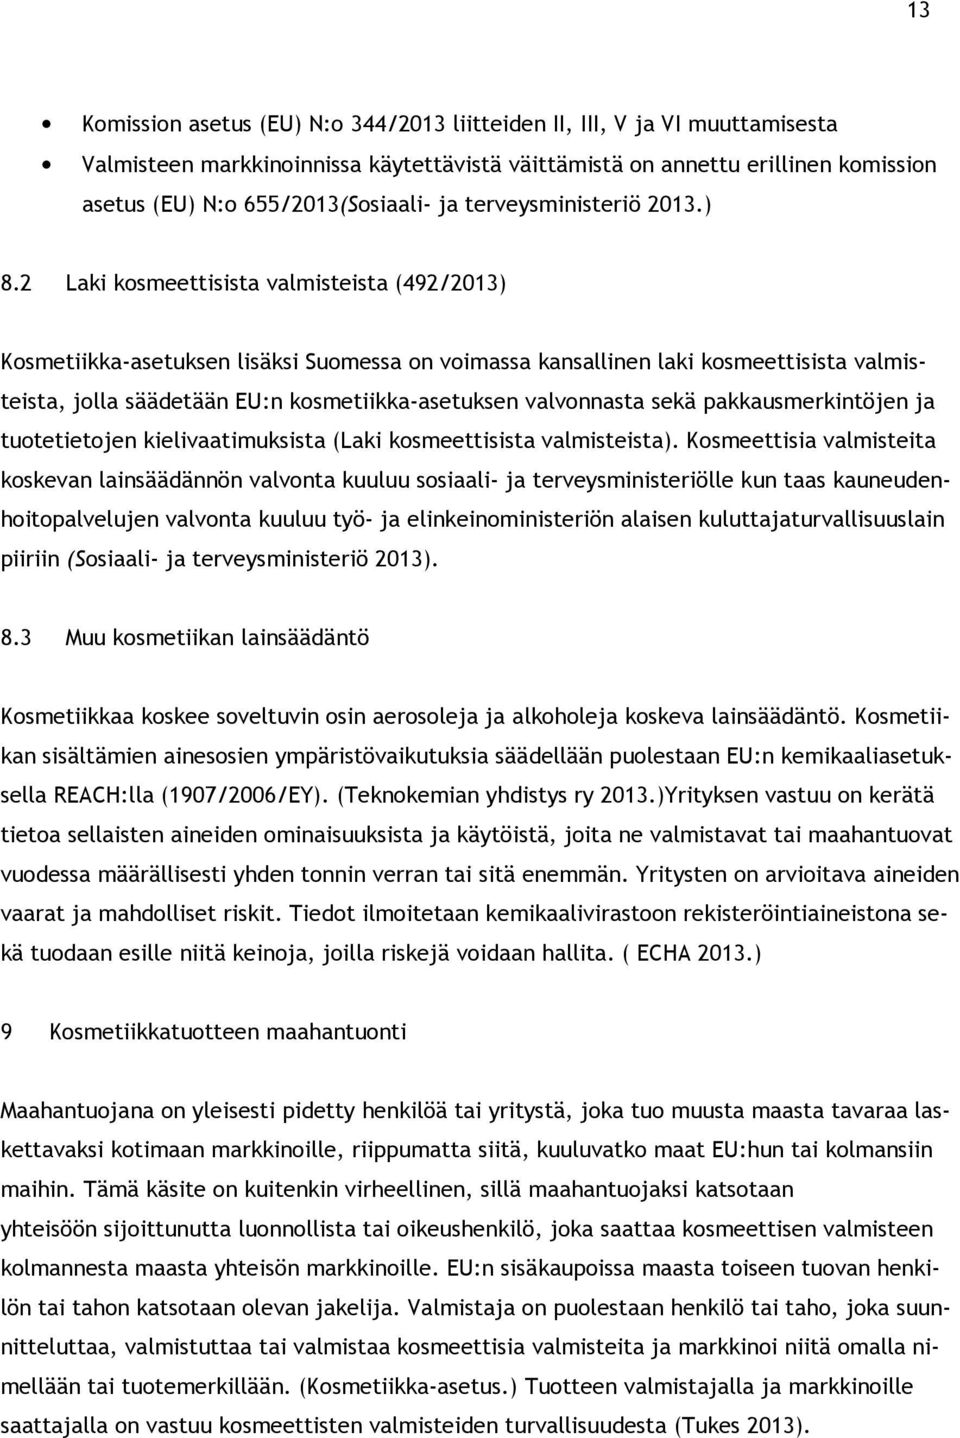 2 Laki kosmeettisista valmisteista (492/2013) Kosmetiikka-asetuksen lisäksi Suomessa on voimassa kansallinen laki kosmeettisista valmisteista, jolla säädetään EU:n kosmetiikka-asetuksen valvonnasta